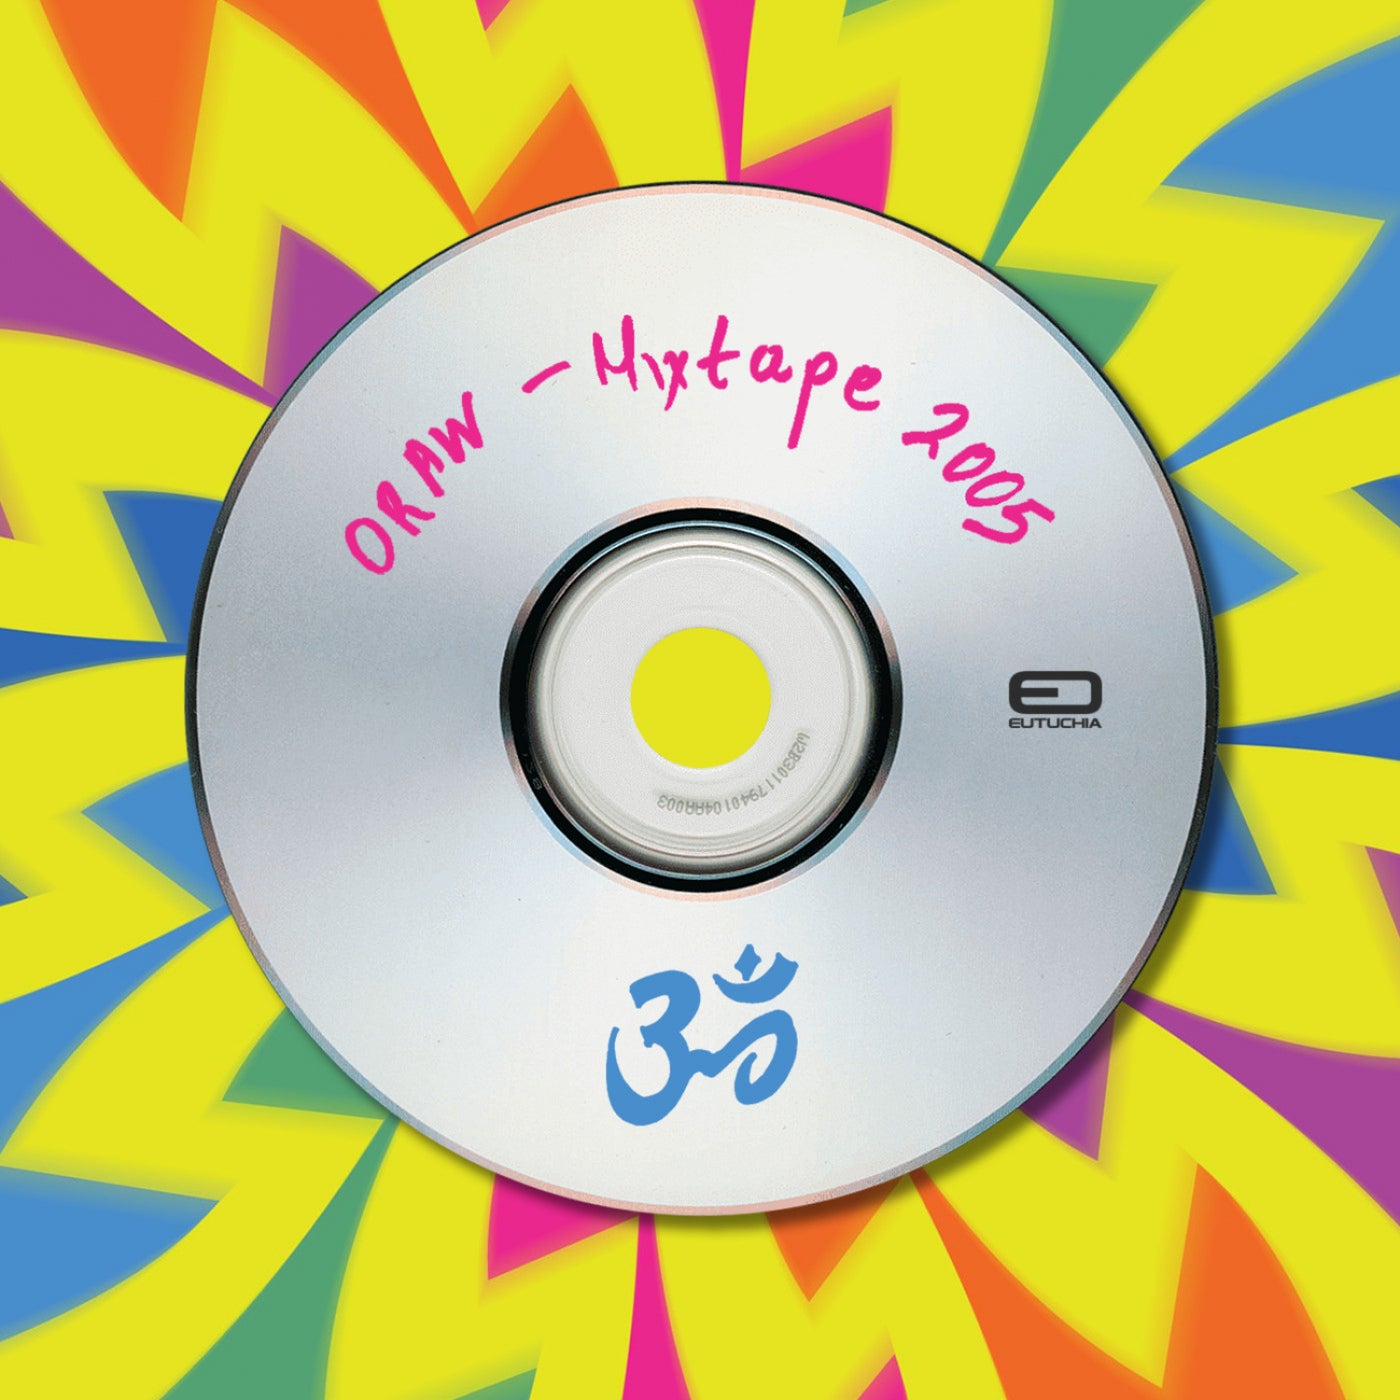 Mixtape 2005